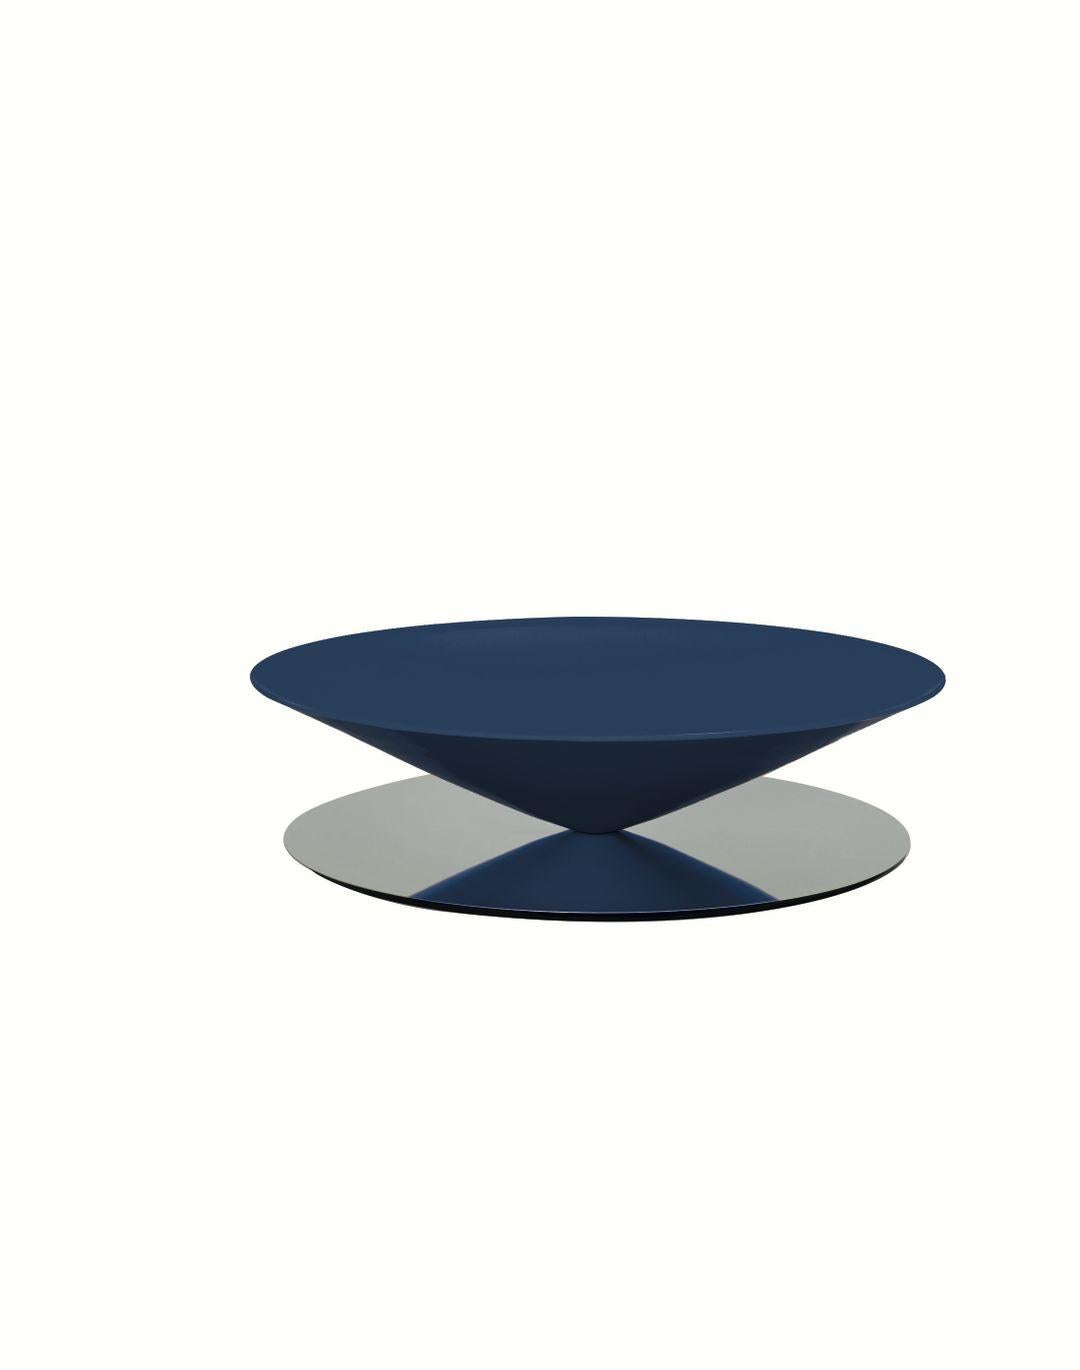 Float est une table basse sculpturale qui défie les sens et la perception. Le design géométrique est adouci par des détails raffinés tels que la lèvre biseautée sur les bords du cercle parfait du cône.

La production de Float est un défi technique